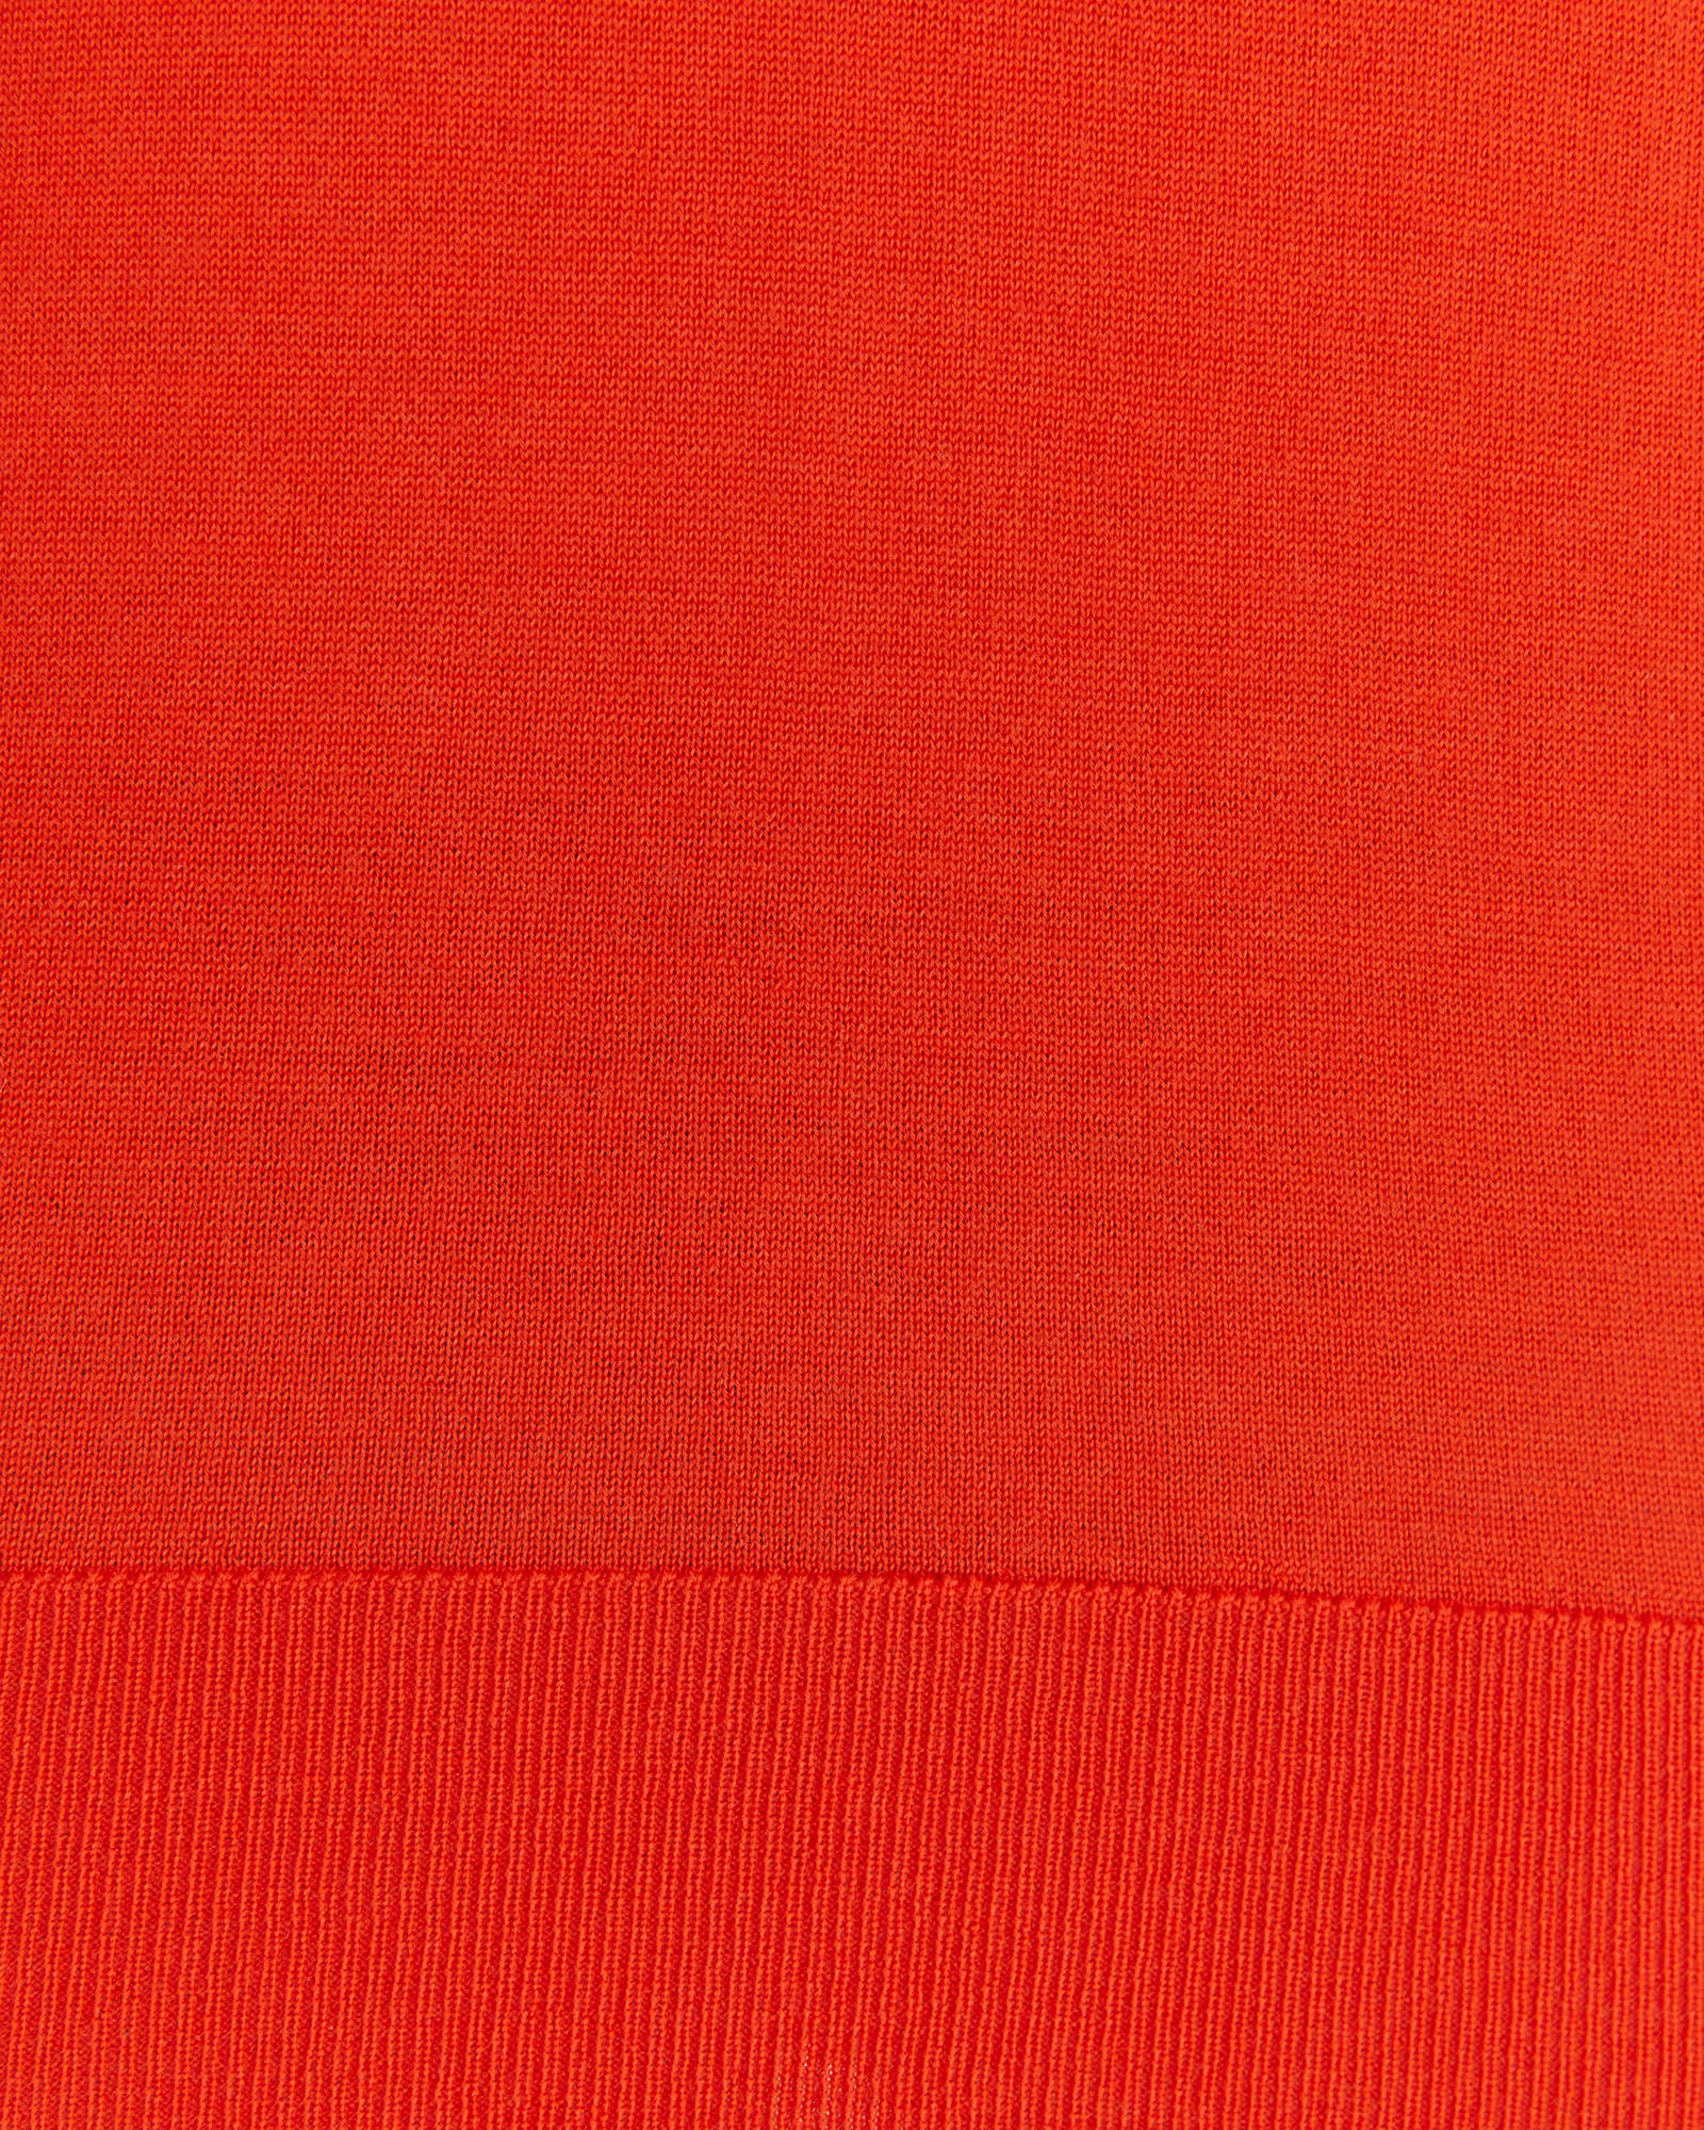 Merino Wool Long Sleeve Knit in BLOOD ORANGE